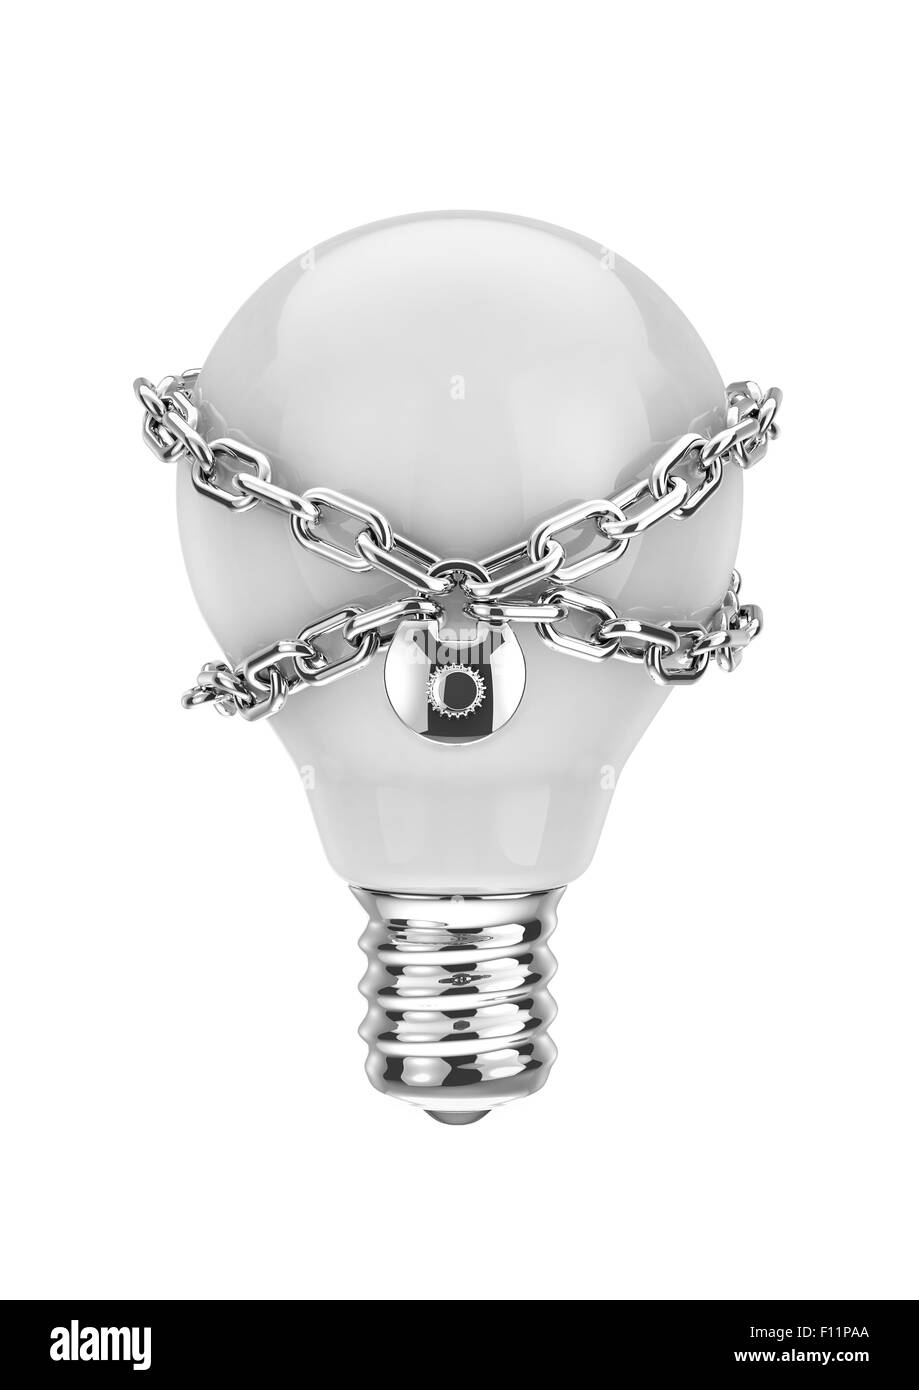 Proprietà intellettuale, 3D Rendering della lampadina con serratura e catena Foto Stock